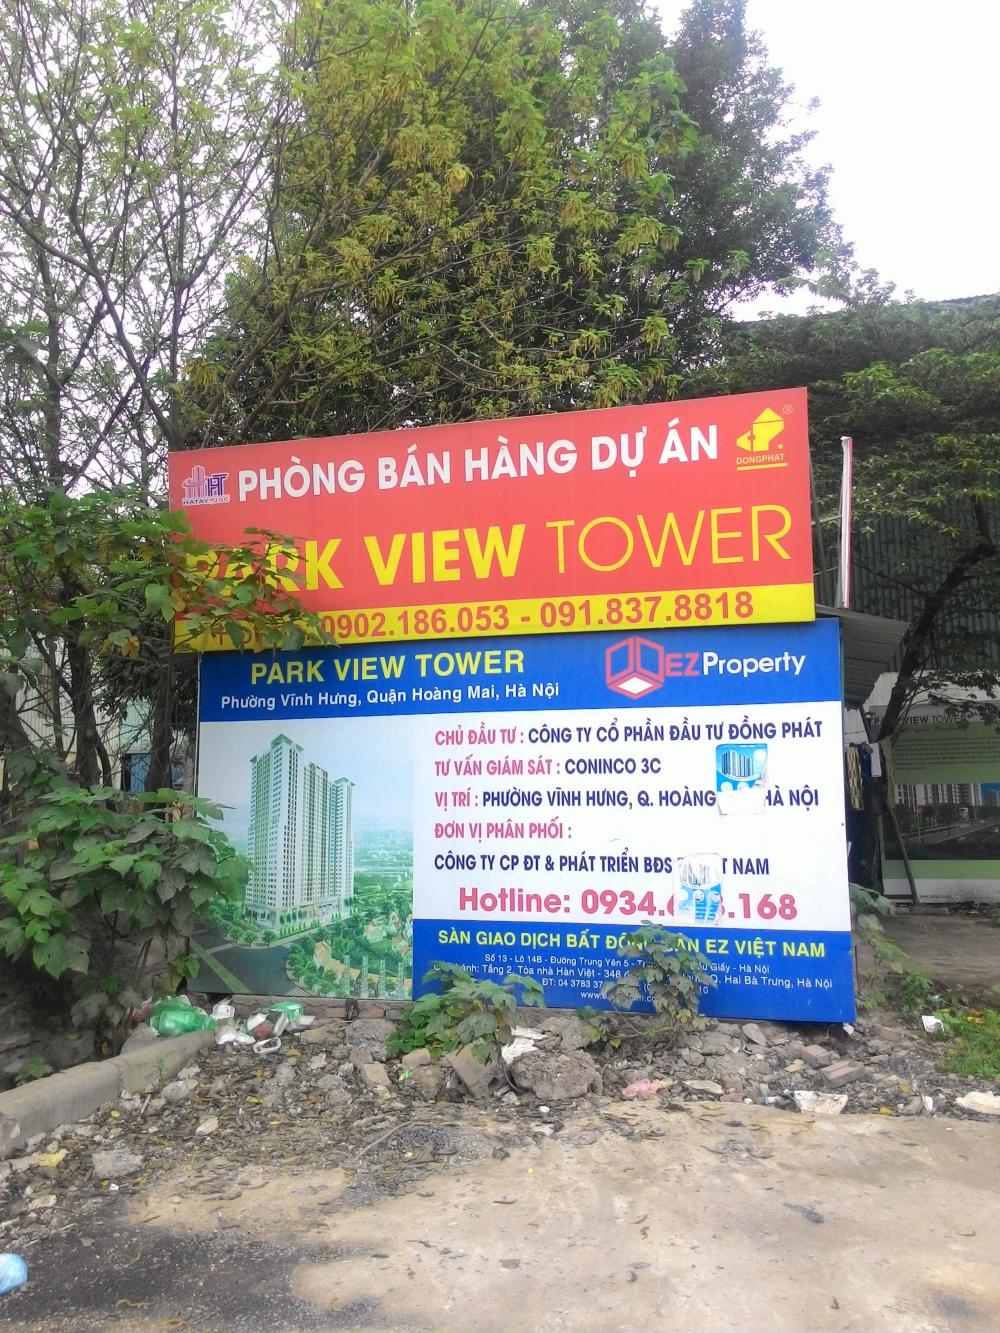 Hình ảnh về Đồng Phát Park View Tower